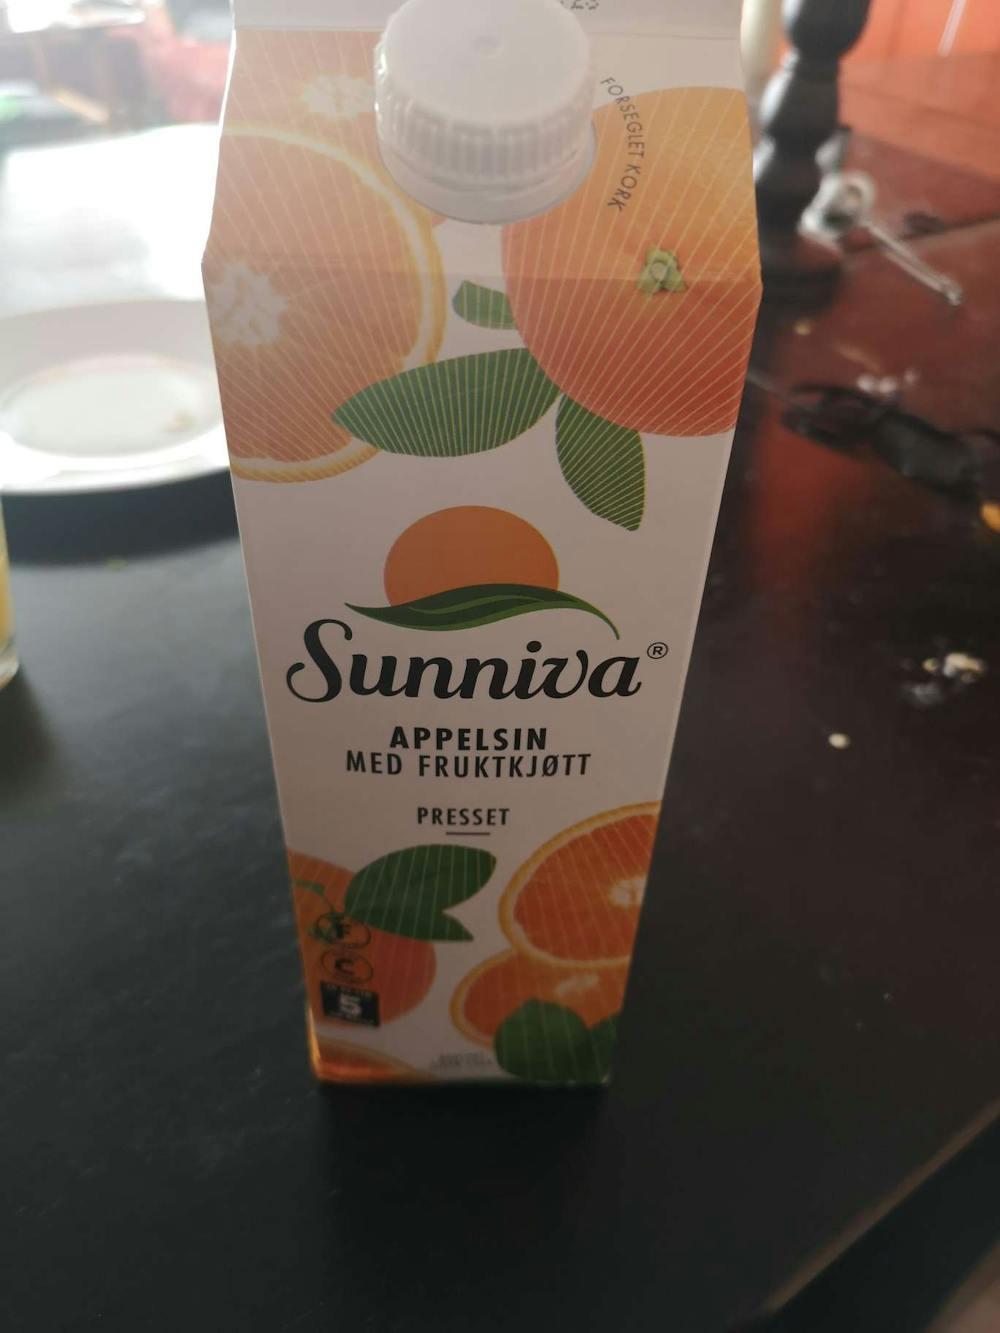 Appelsin med fruktkjøtt, Sunniva